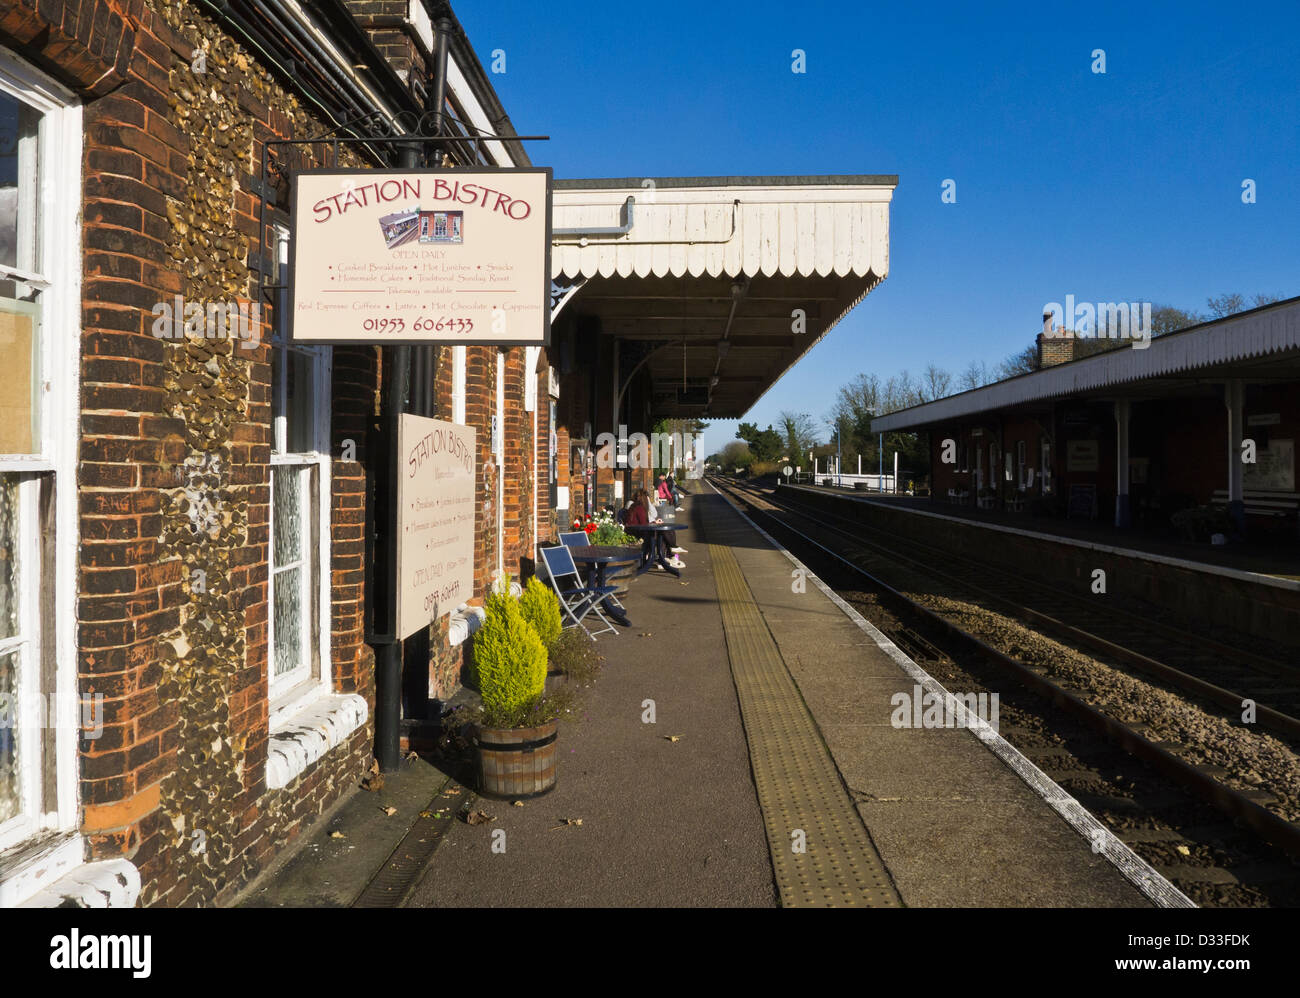 Der Bahnhof Bistro am Bahnhof in Wymondham, Norfolk, England. Stockfoto